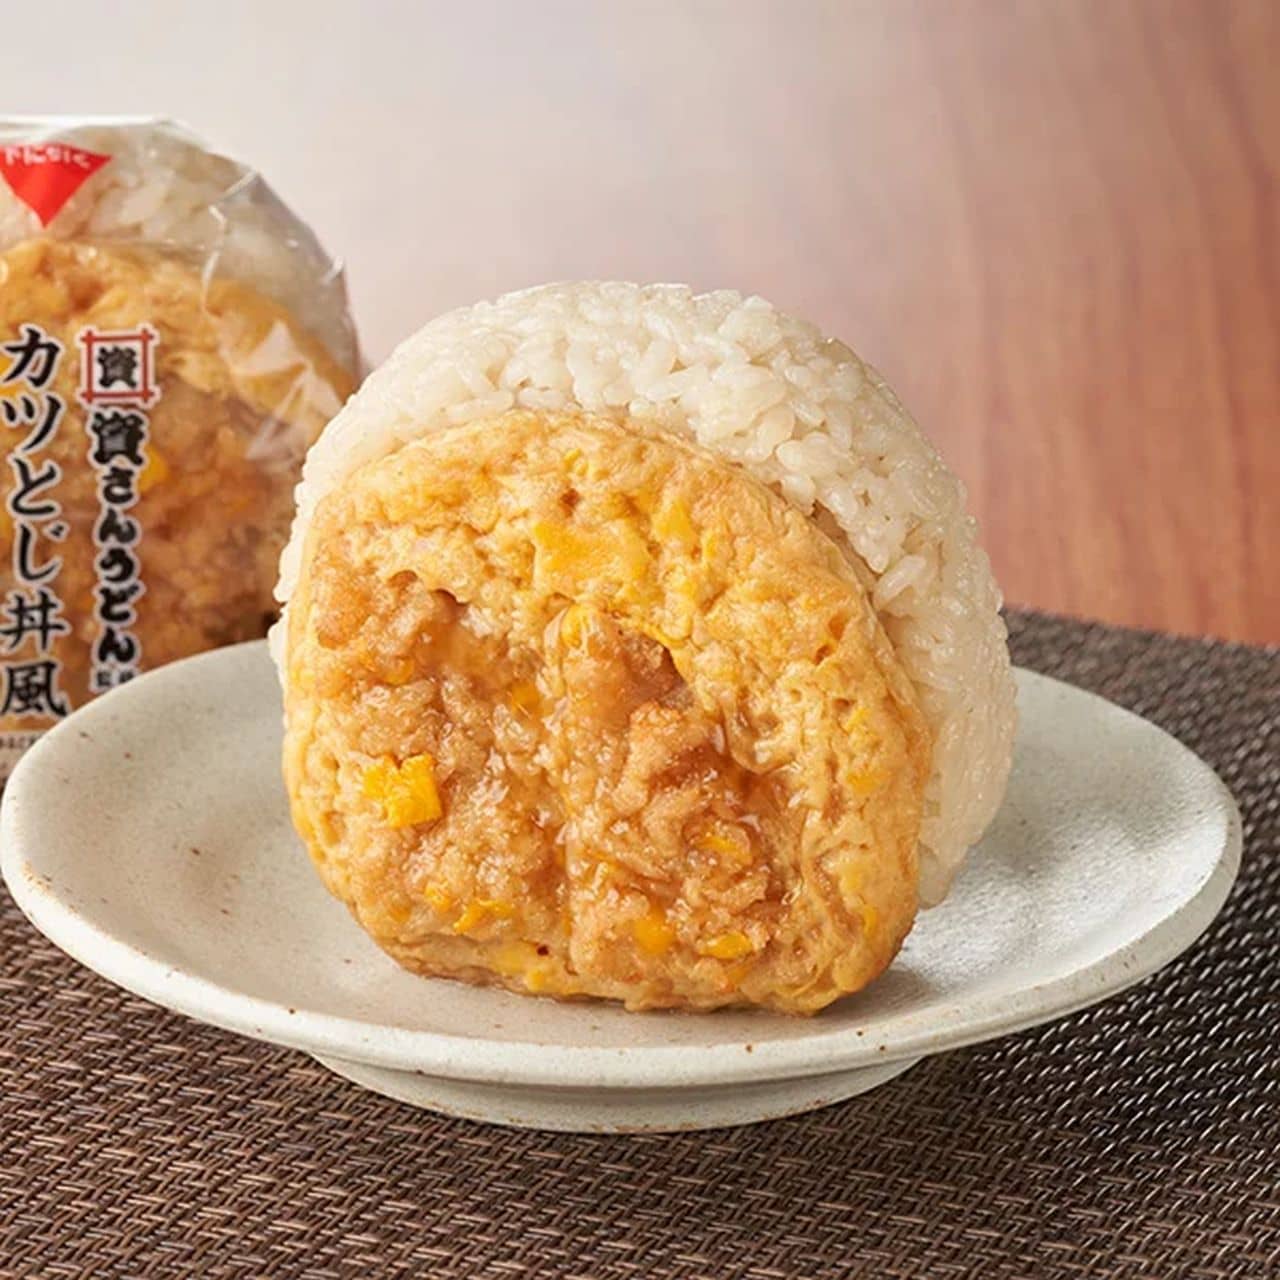 FamilyMart "Katsutomizushi-don style rice bowl rice balls supervised by Shisan Udon" (Japanese only)